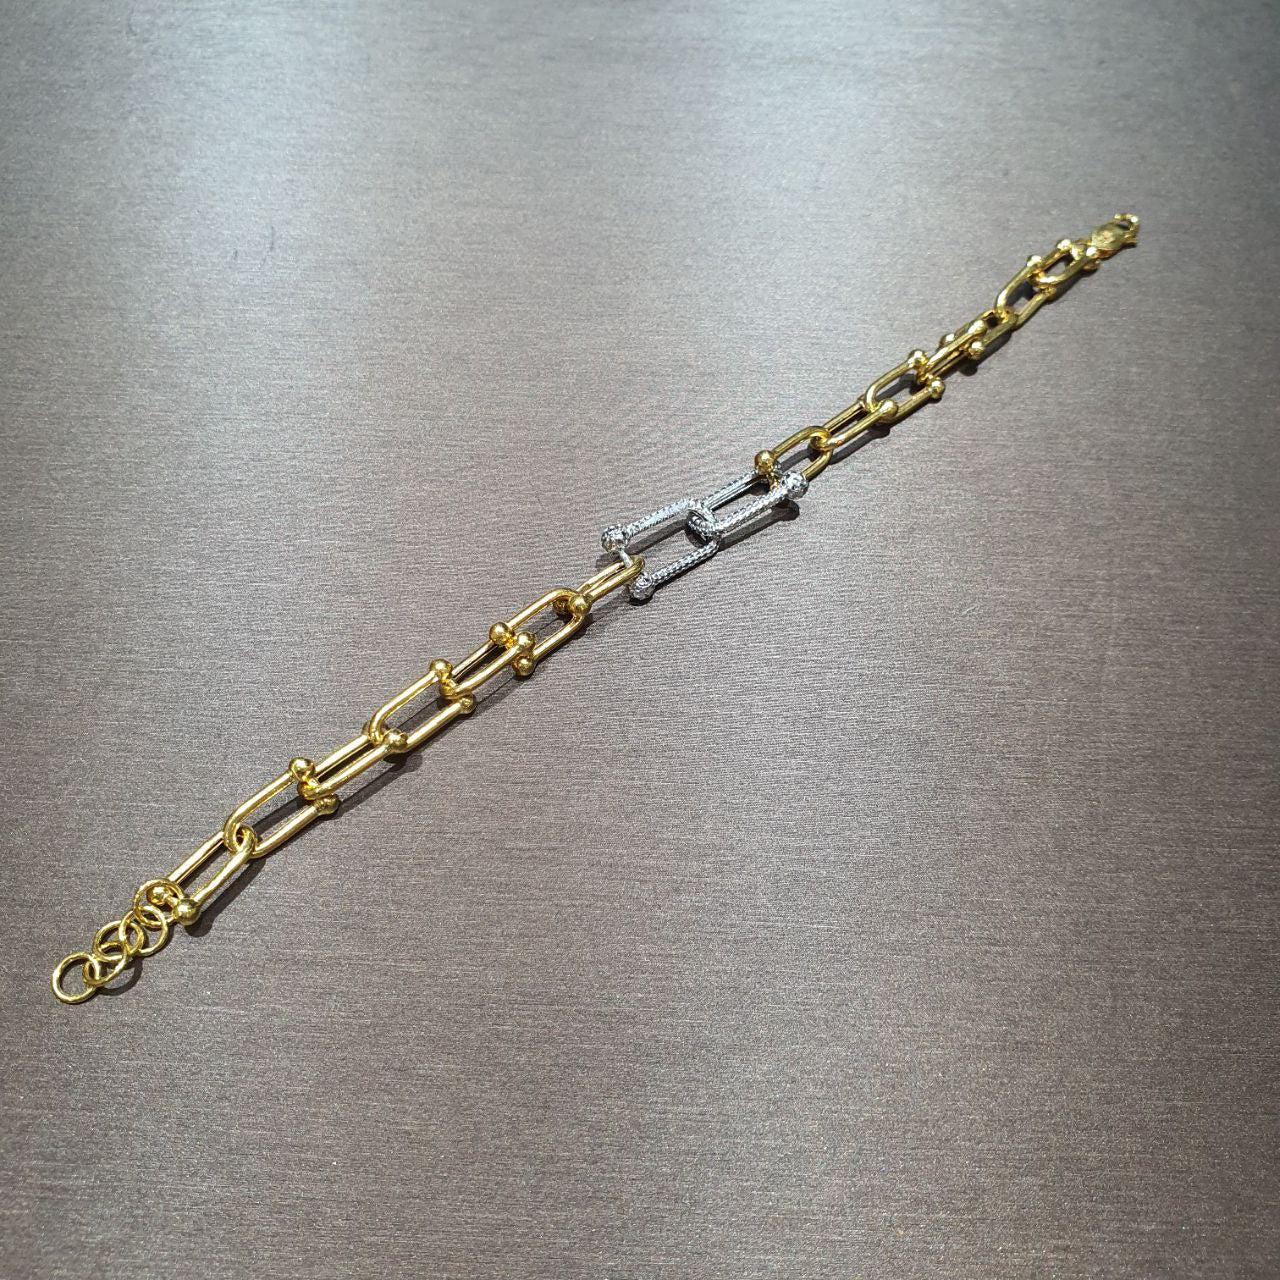 22k / 916 Gold Chain Link Bracelet 2-tone design-Bracelets-Best Gold Shop